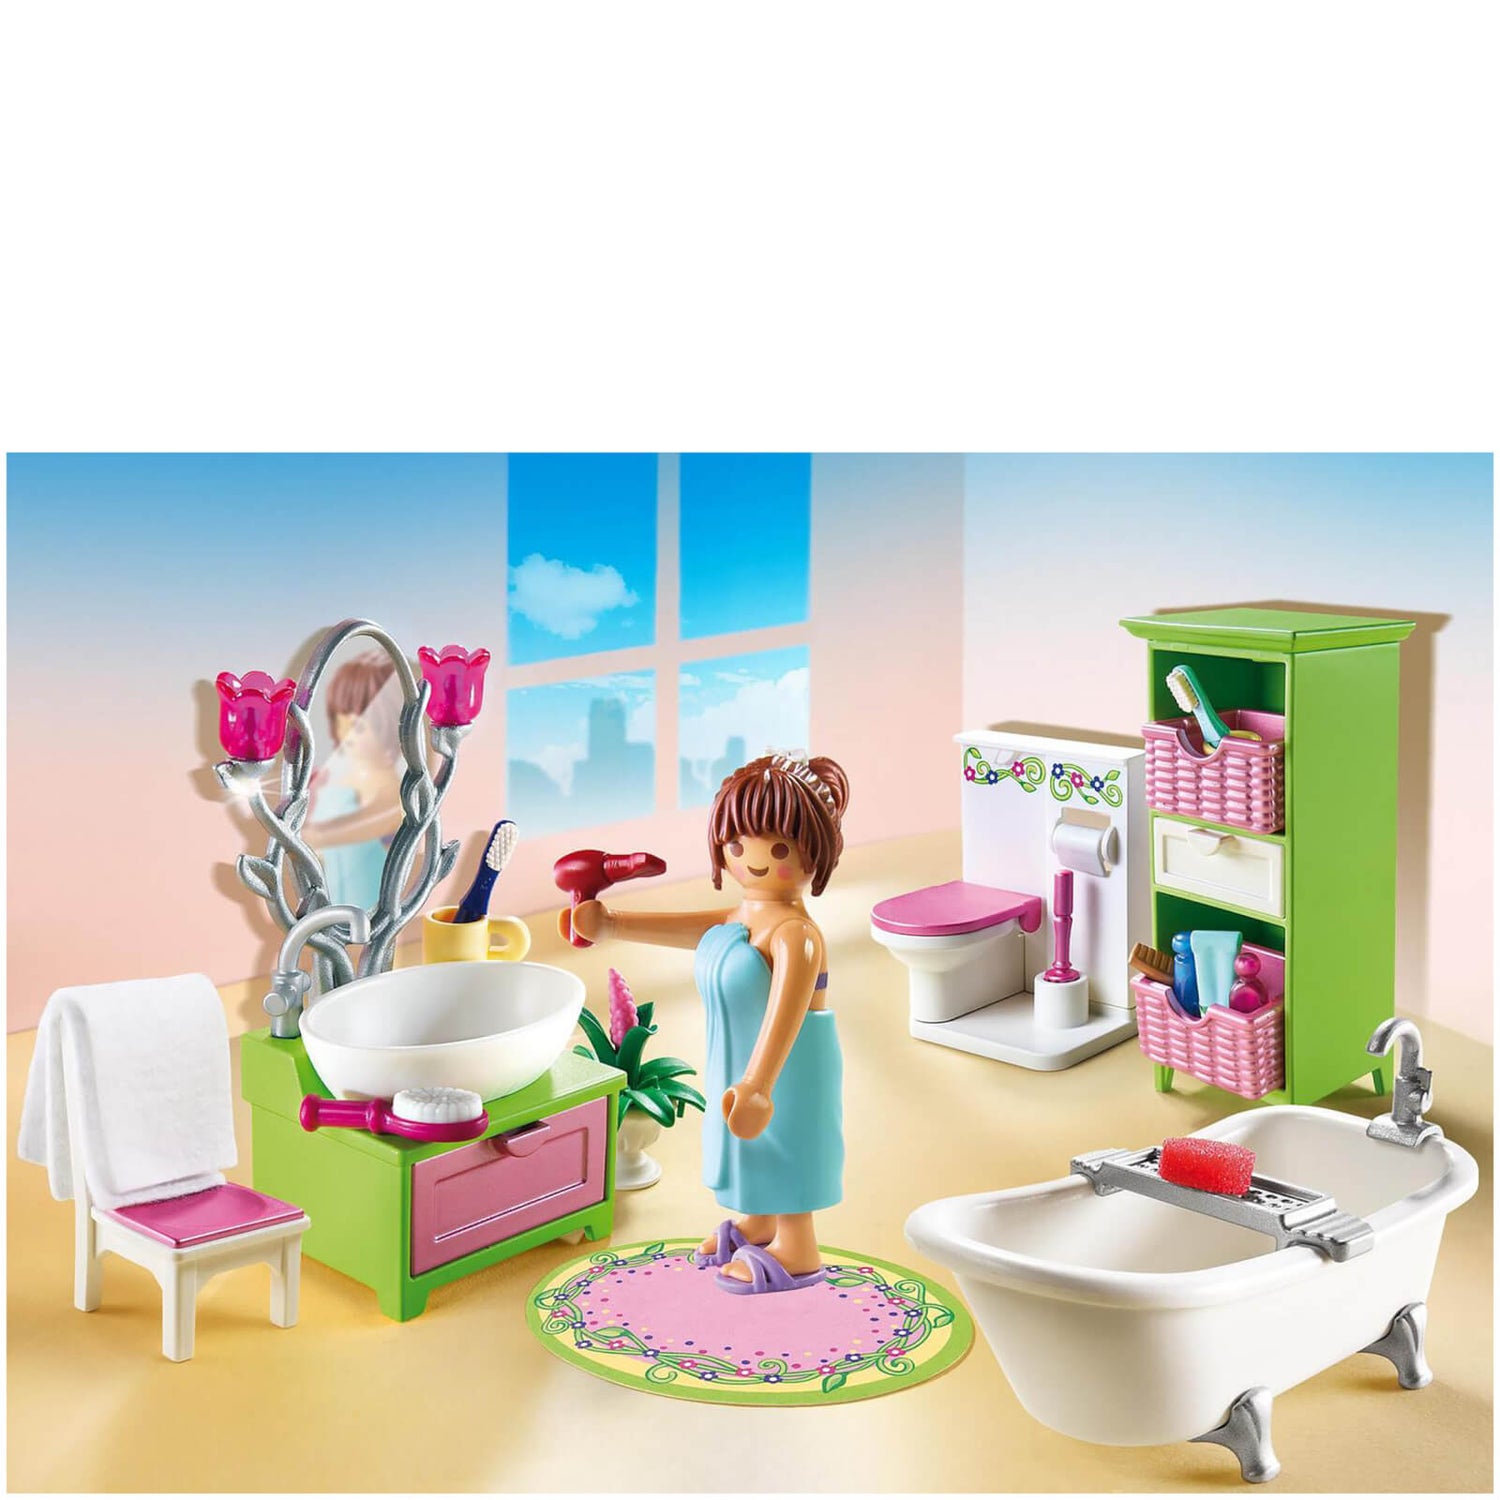 Salle de bains et baignoire -Playmobil (5307) Toys